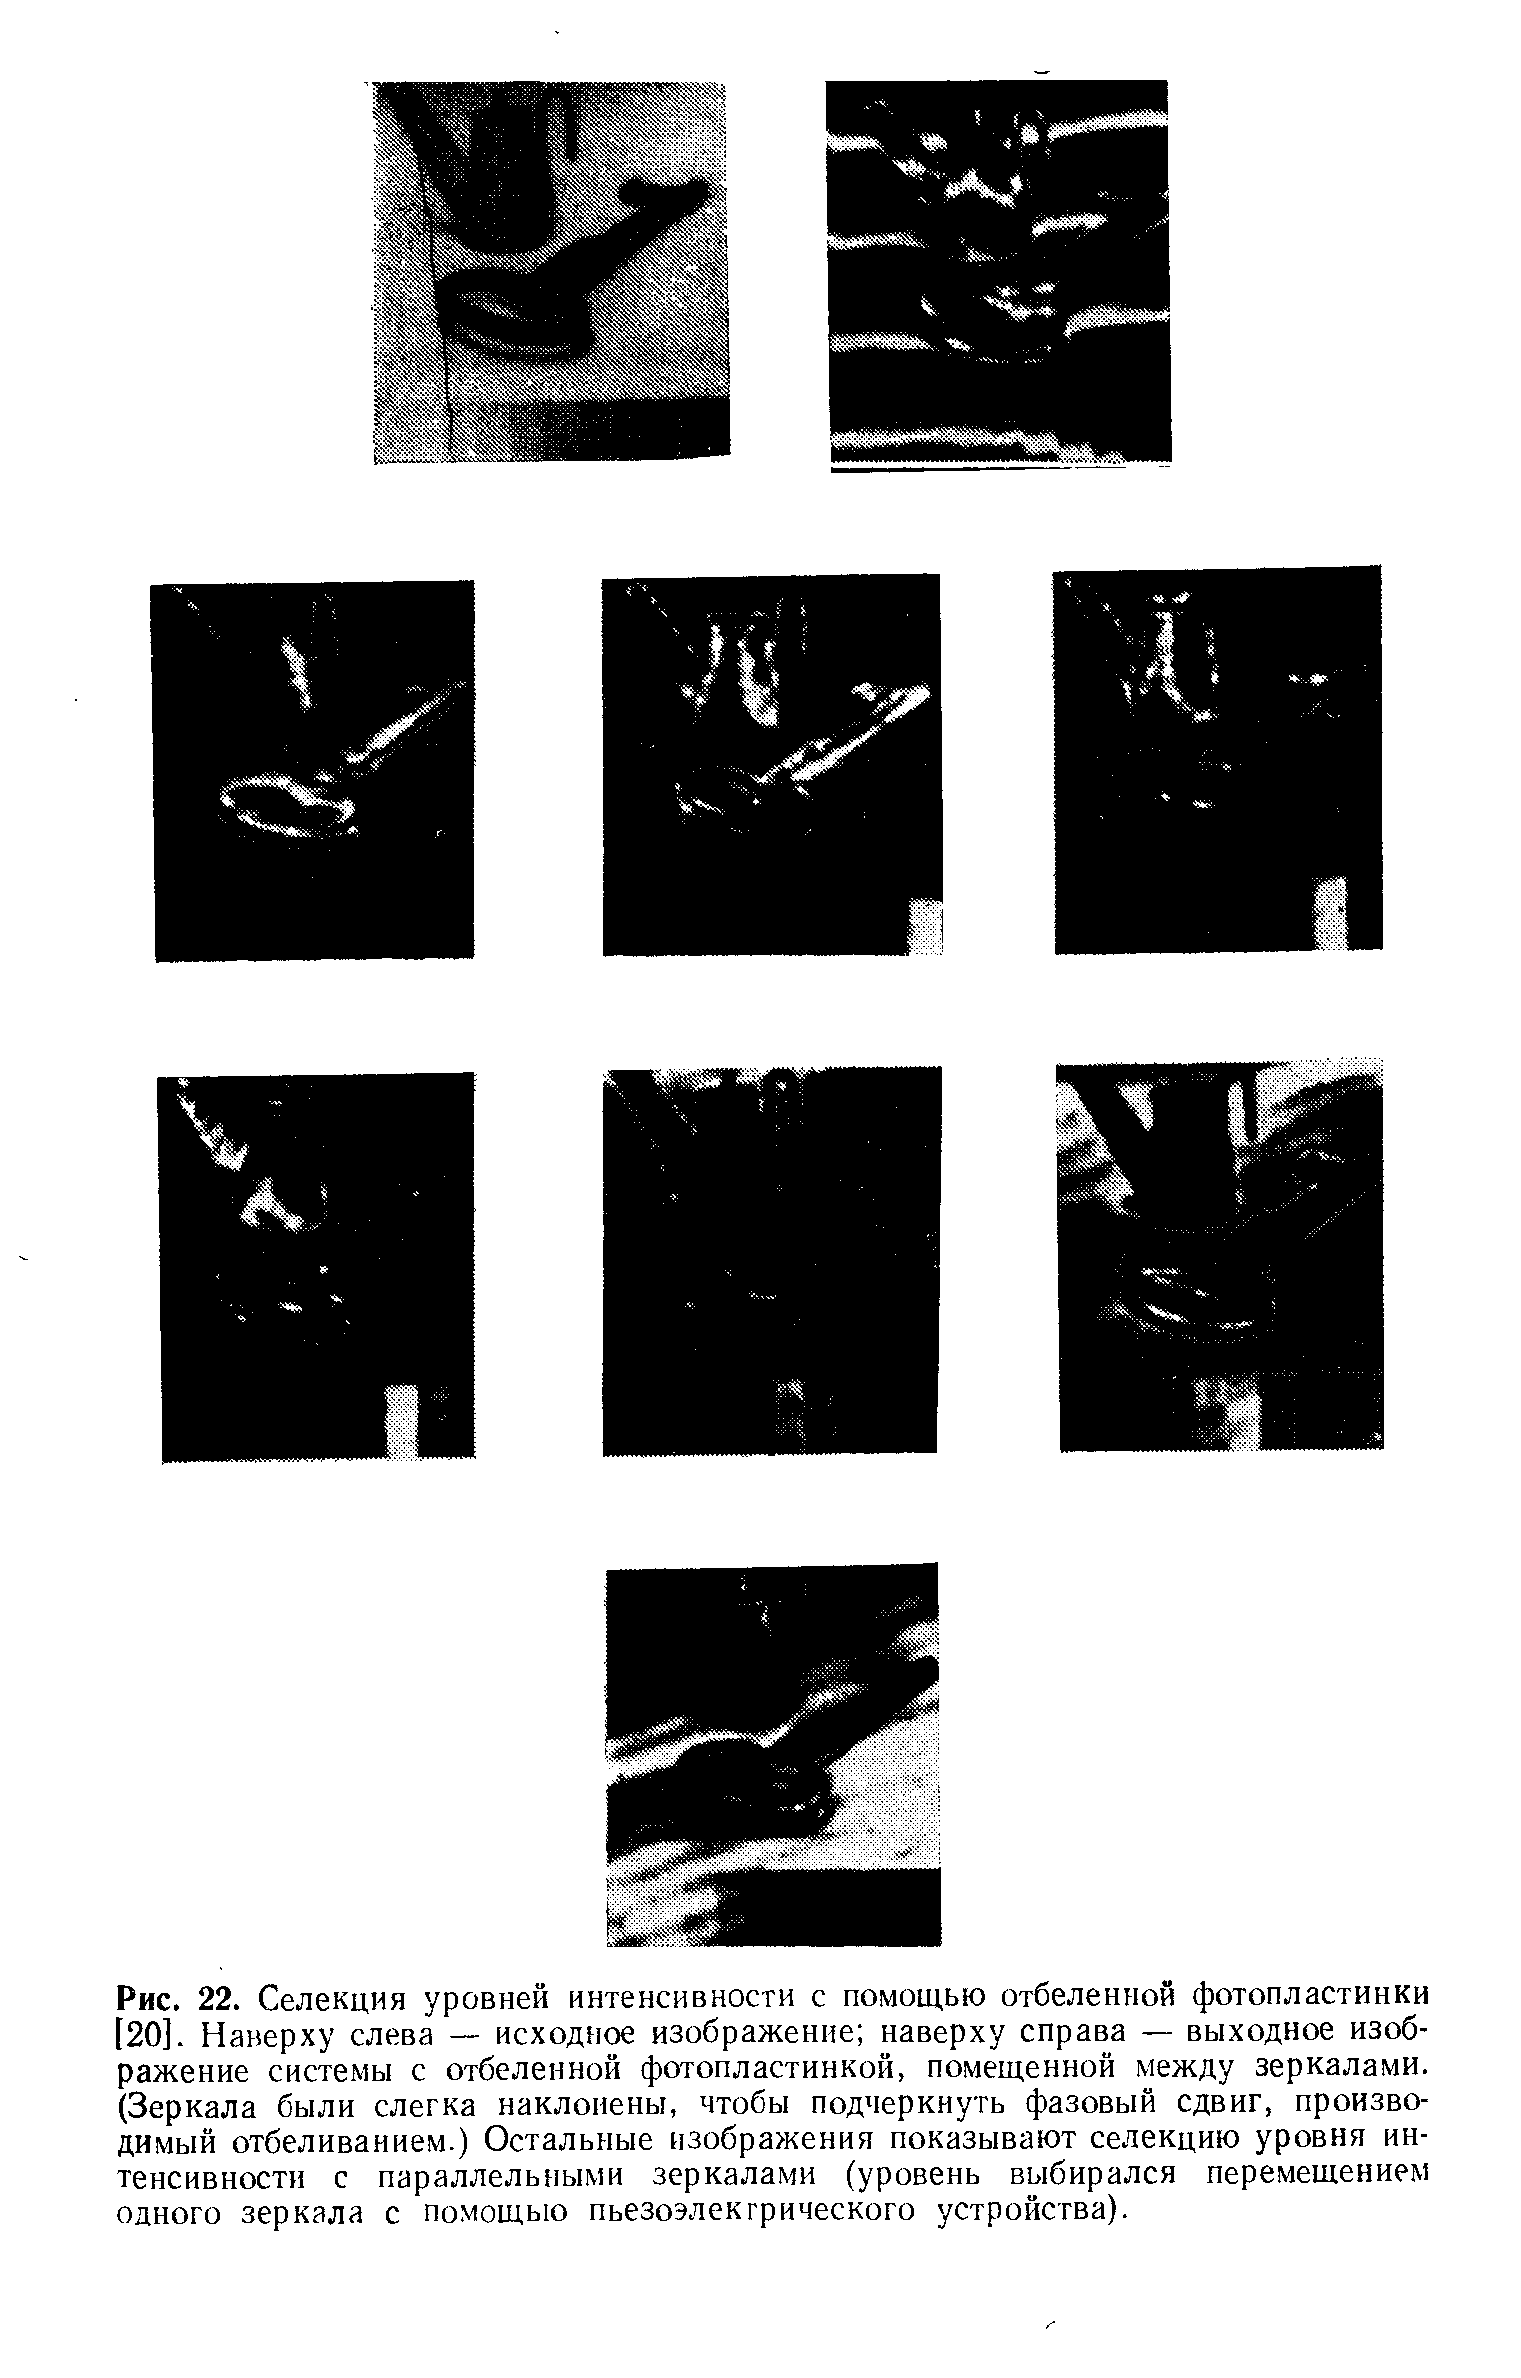 Рис. 22. Селекция уровней интенсивности с помощью отбеленной фотопластинки [20]. Наверху слева — исходное изображение наверху справа — выходное изображение системы с отбеленной фотопластинкой, помещенной между зеркалами. (Зеркала были слегка наклонены, чтобы подчеркнуть <a href="/info/16061">фазовый сдвиг</a>, производимый отбеливанием.) Остальные изображения показывают се.чекцию уровня интенсивности с параллельными зеркалами (уровень выбирался перемещением одного зеркала с помощью пьезоэлектрического устройства).
